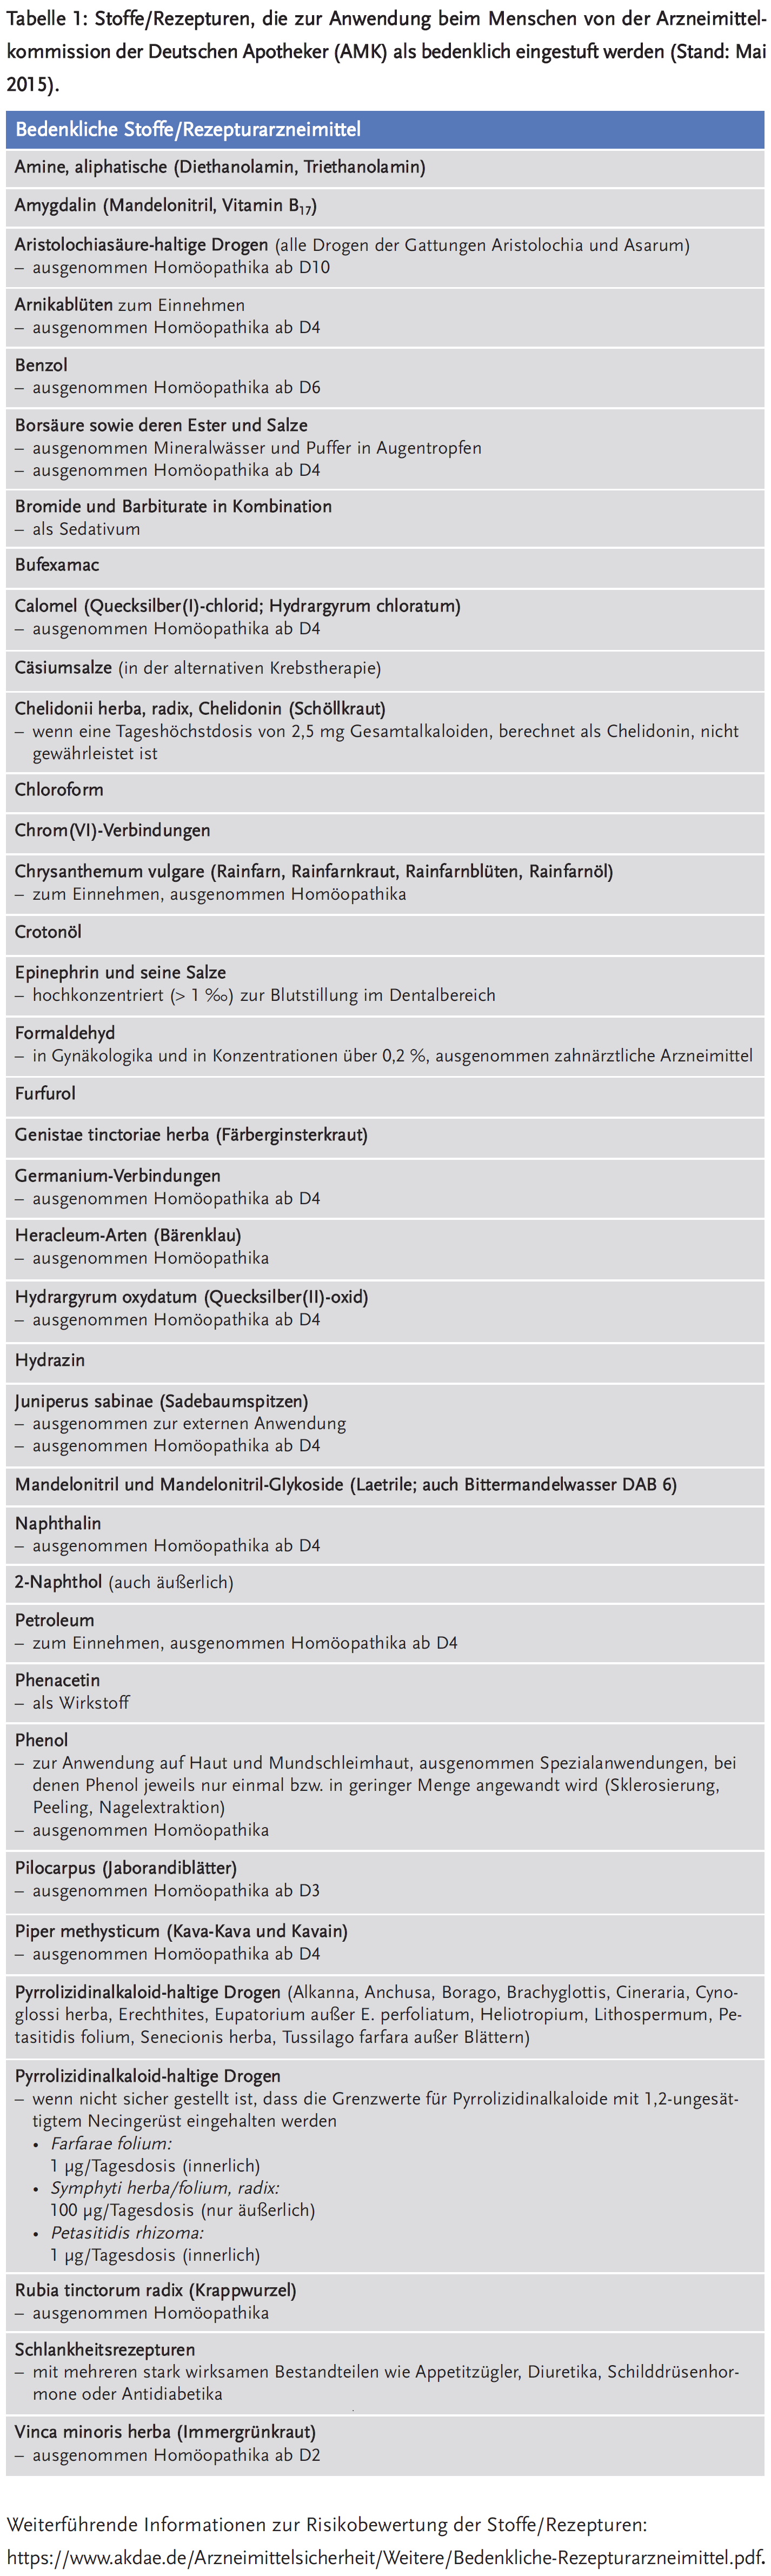 Tabelle 1: Stoffe/Rezepturen, die zur Anwendung beim Menschen von der Arzneimittelkommission der Deutschen Apotheker (AMK) als bedenklich eingestuft werden (Stand: Mai 2015).